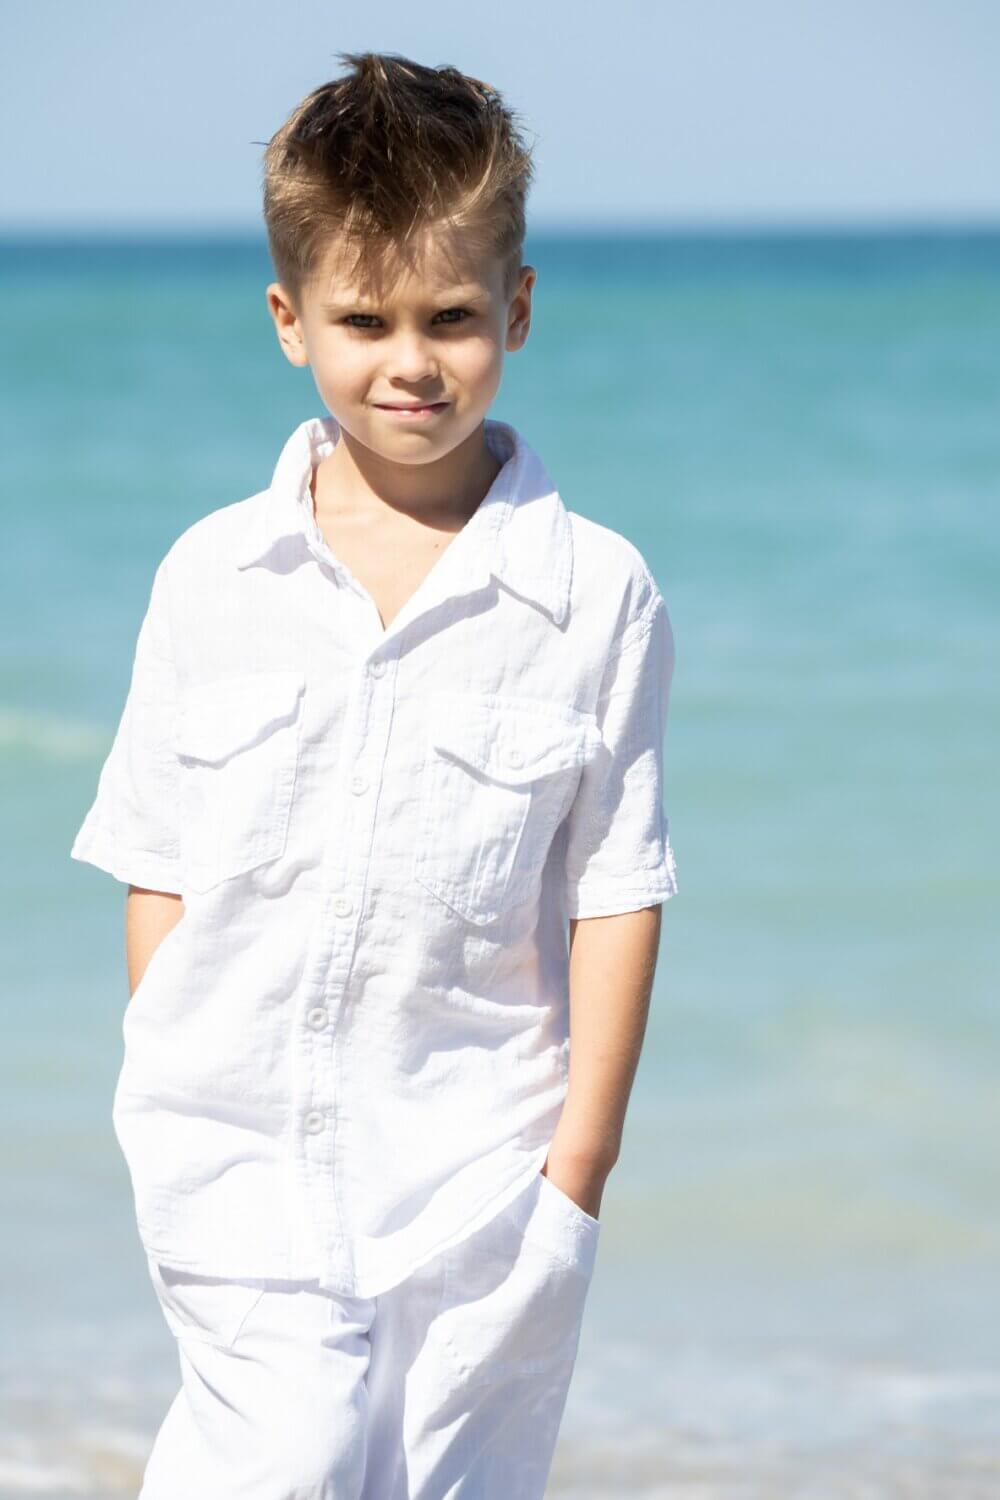 Boy on beach in white shirt